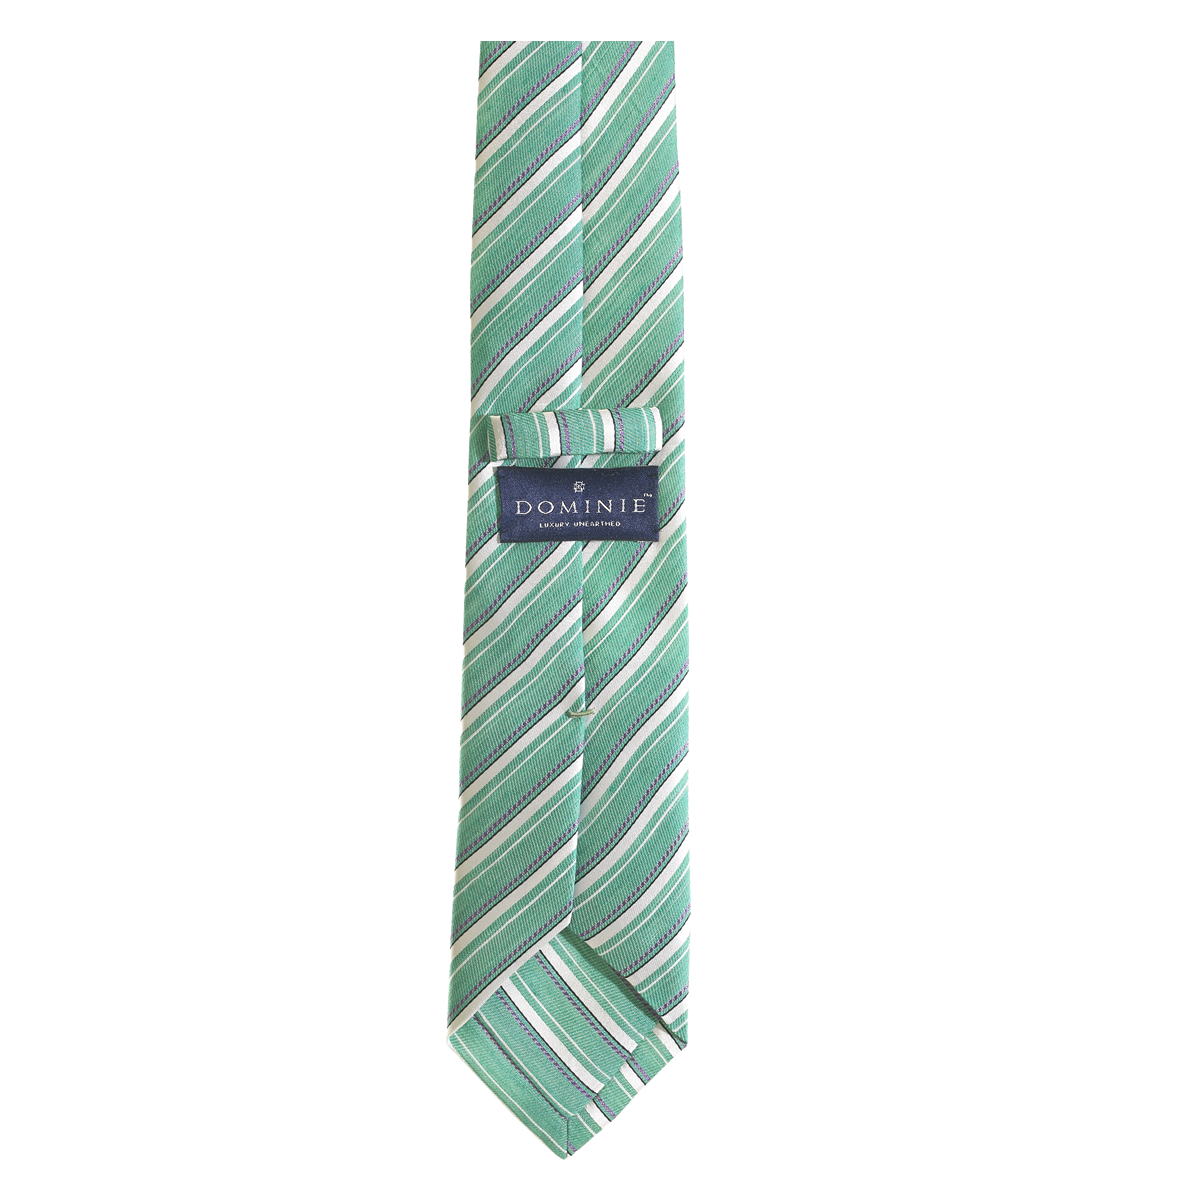 Spring Time Necktie